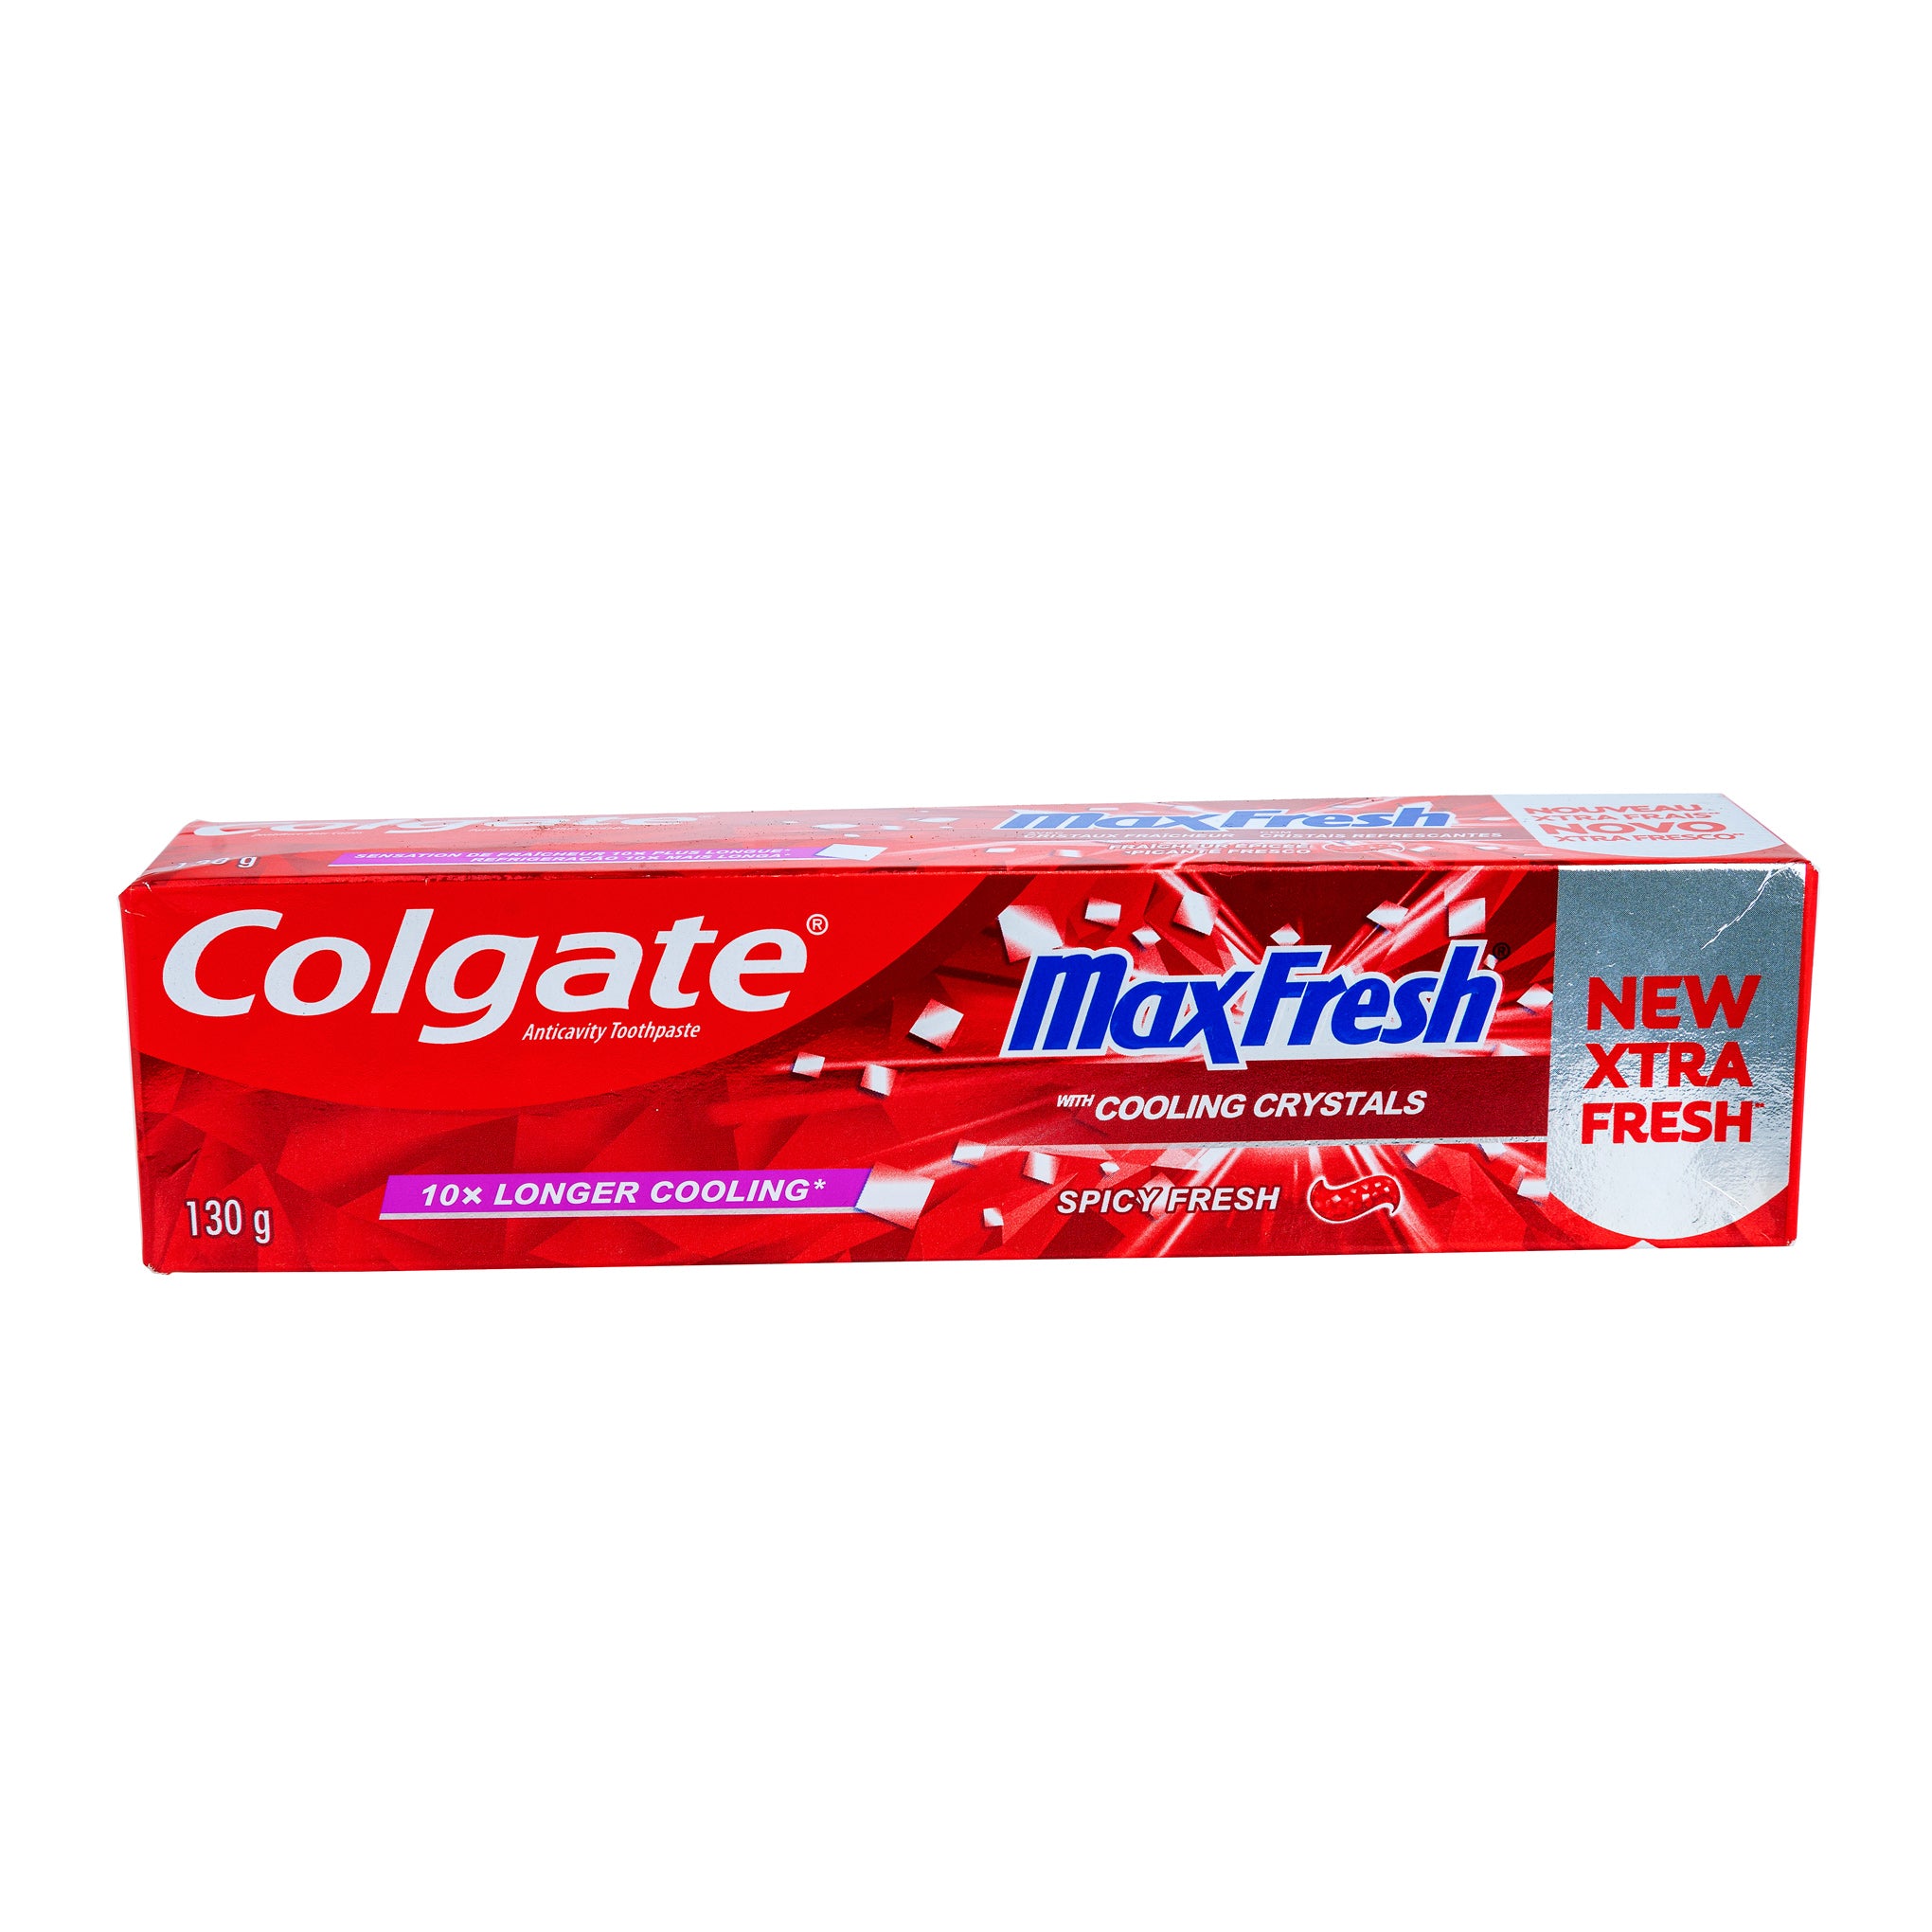 Colgate Maxfresh Spicy Fresh Toothpaste 130g